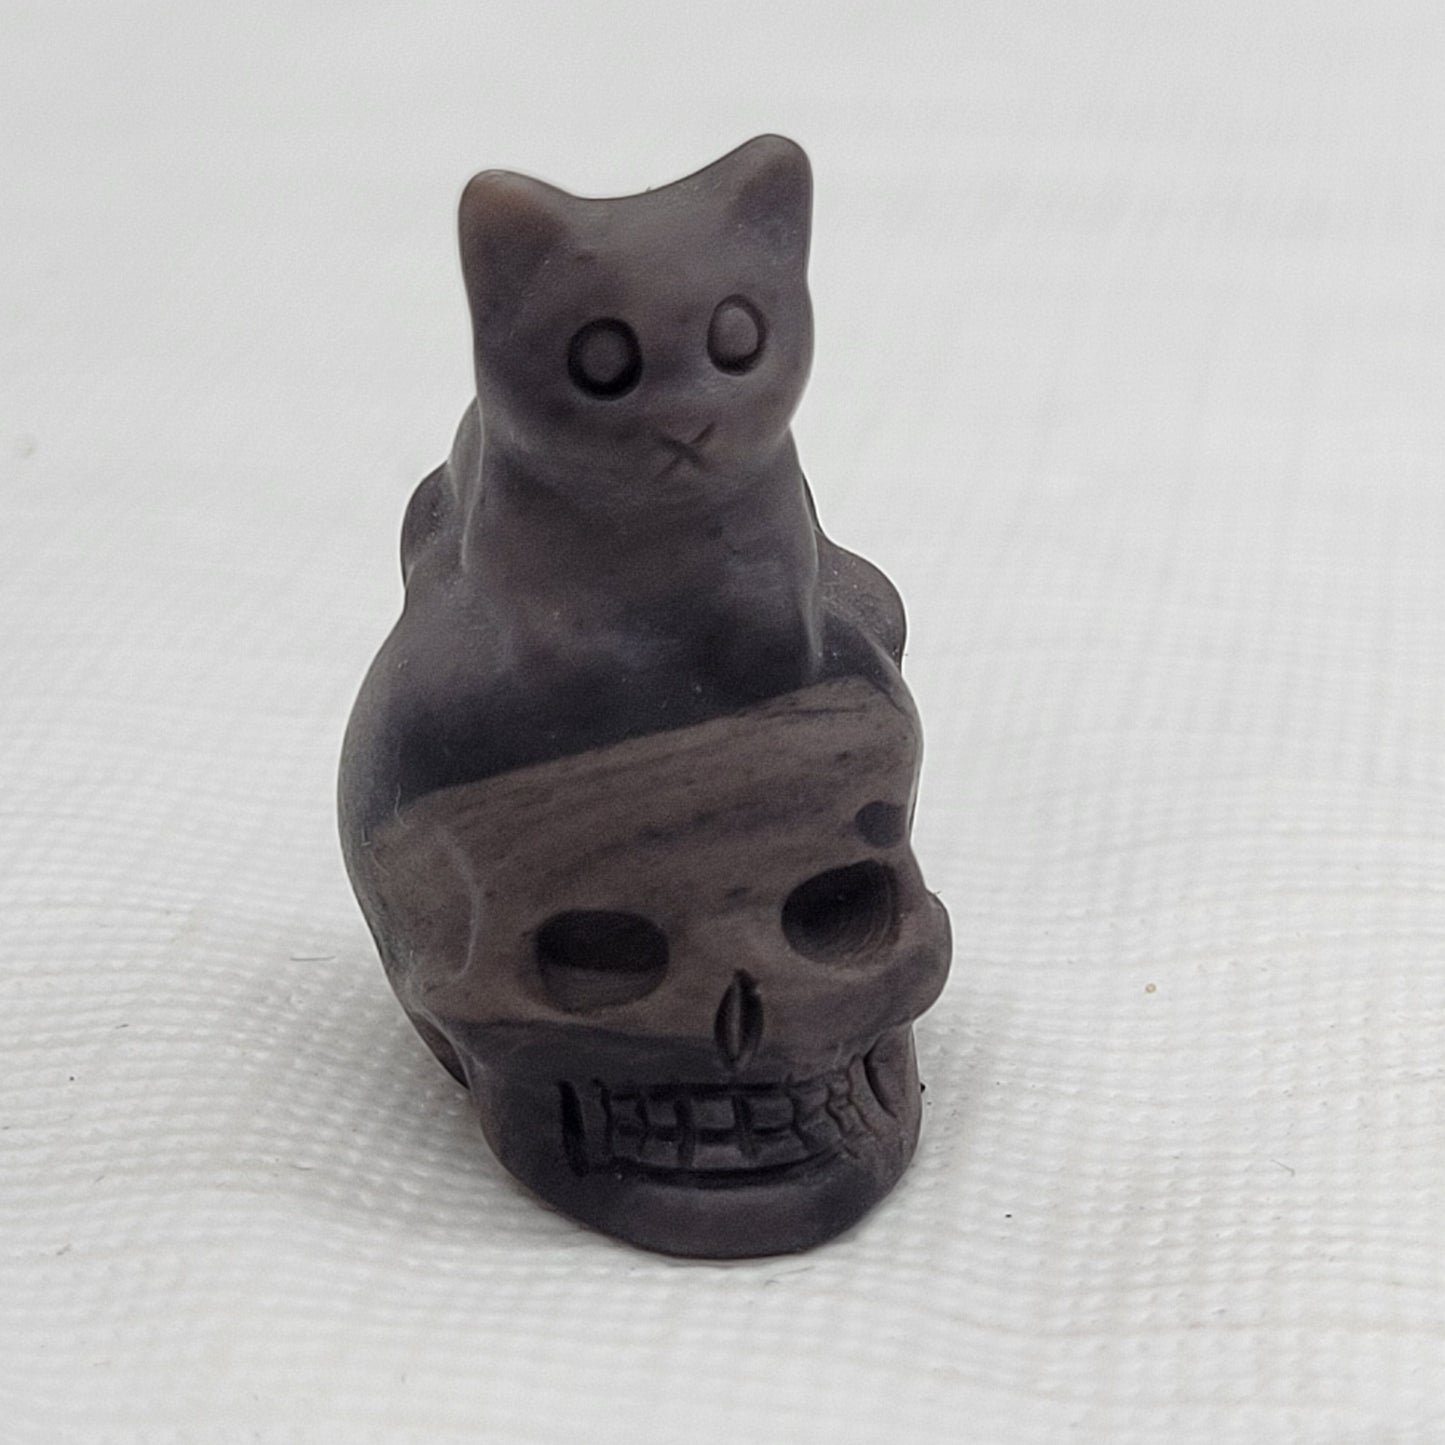 Mini skull w/ cat on top